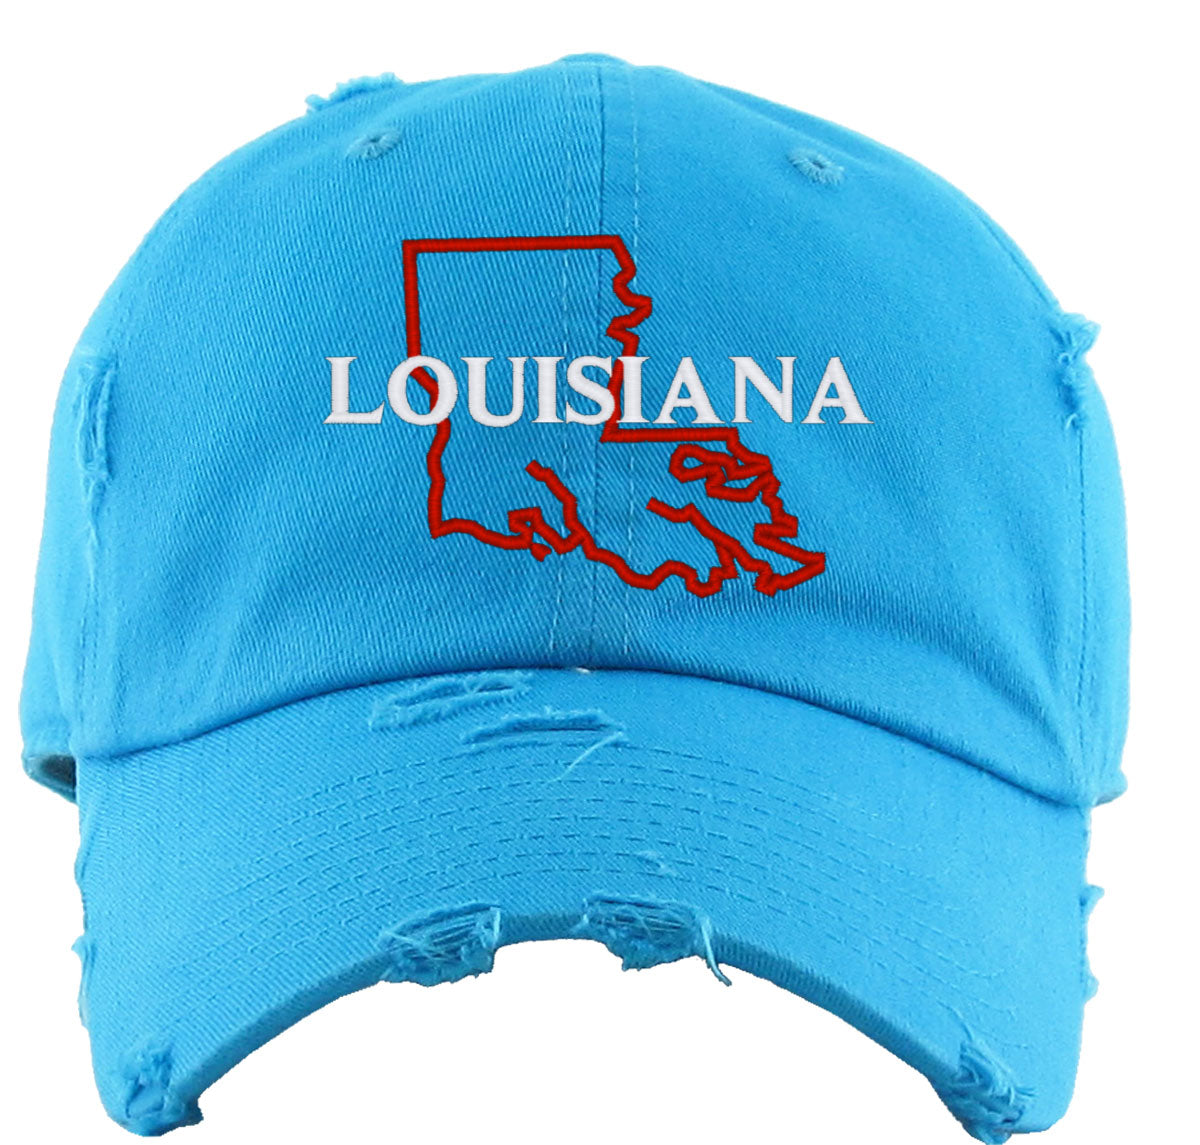 Louisiana Vintage Baseball Cap